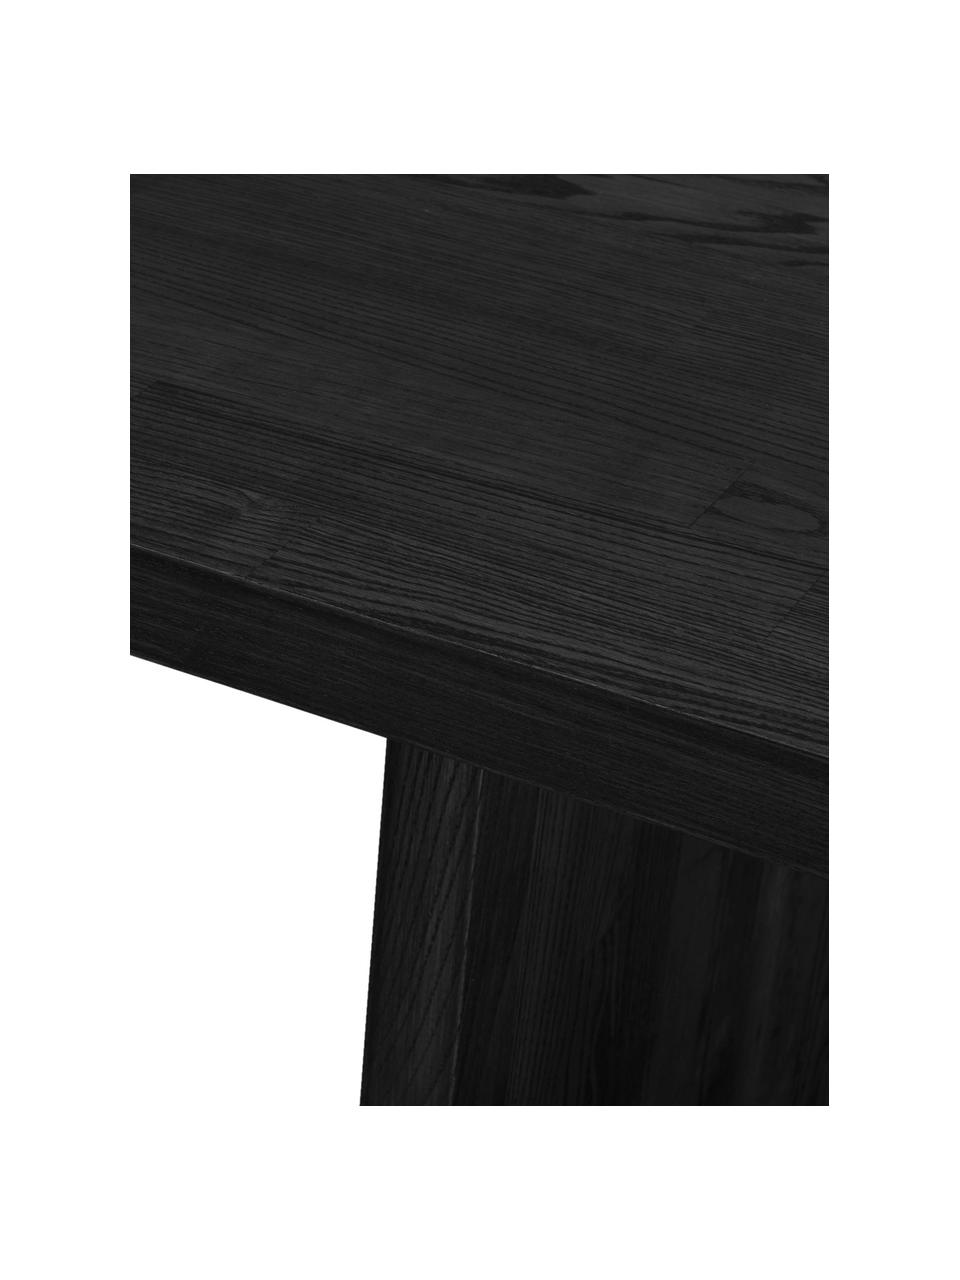 Table bois de frêne noir Emmett, 240 x 95 cm, Bois de frêne massif, laqué, certifié FSC (Forest Stewardship Council), Bois massif noir, larg. 240 x prof. 95 cm